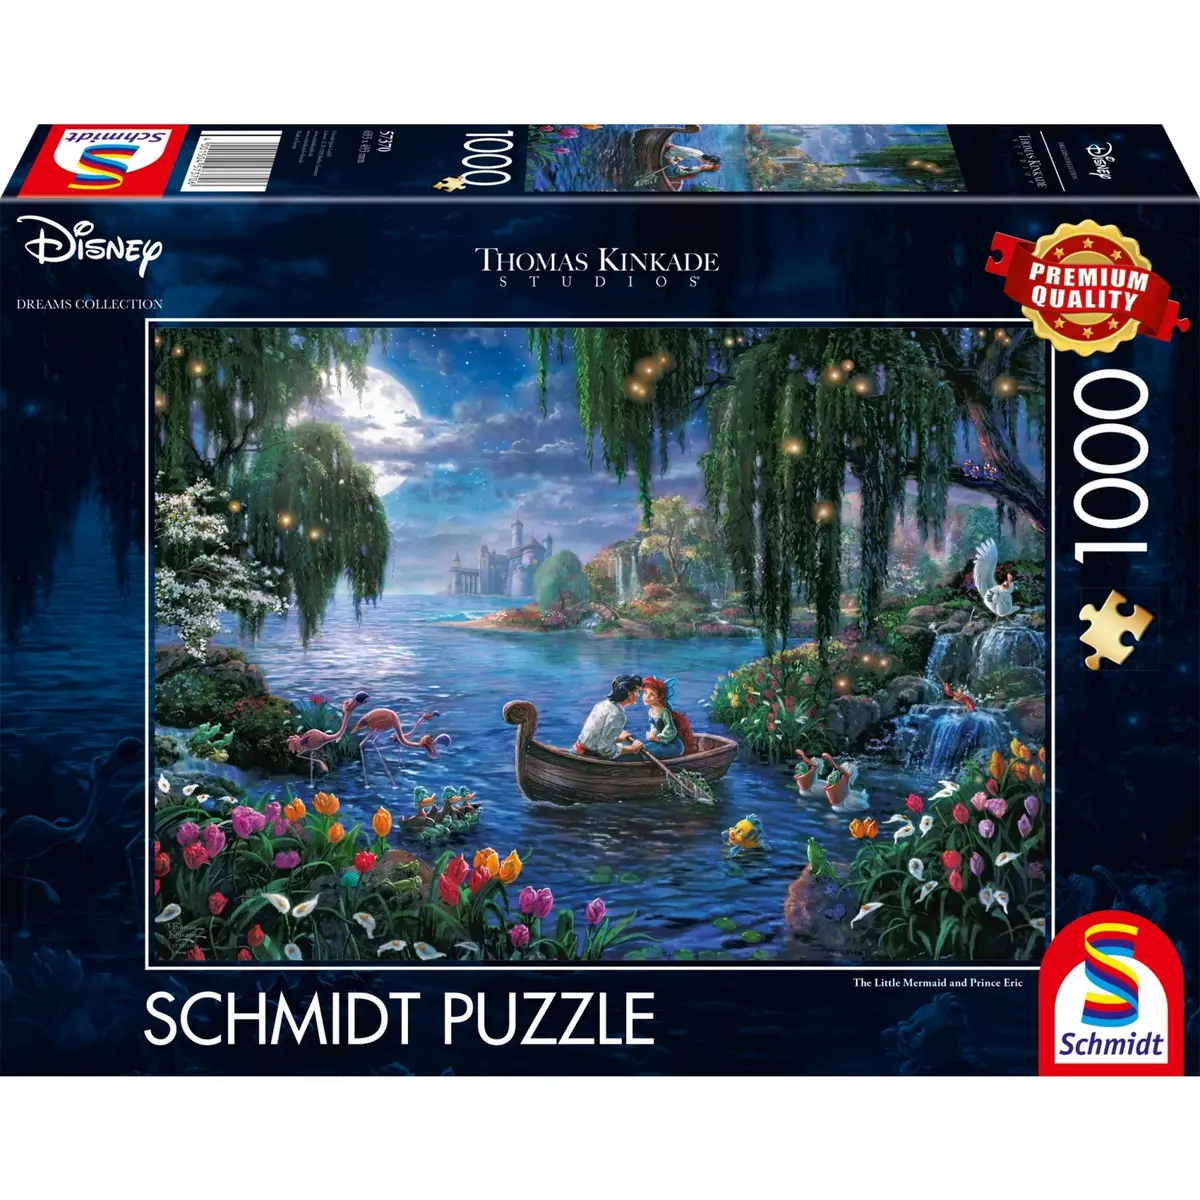 SCHMIDT Puzzle Disney The Little Mermaid Et Prince Eric